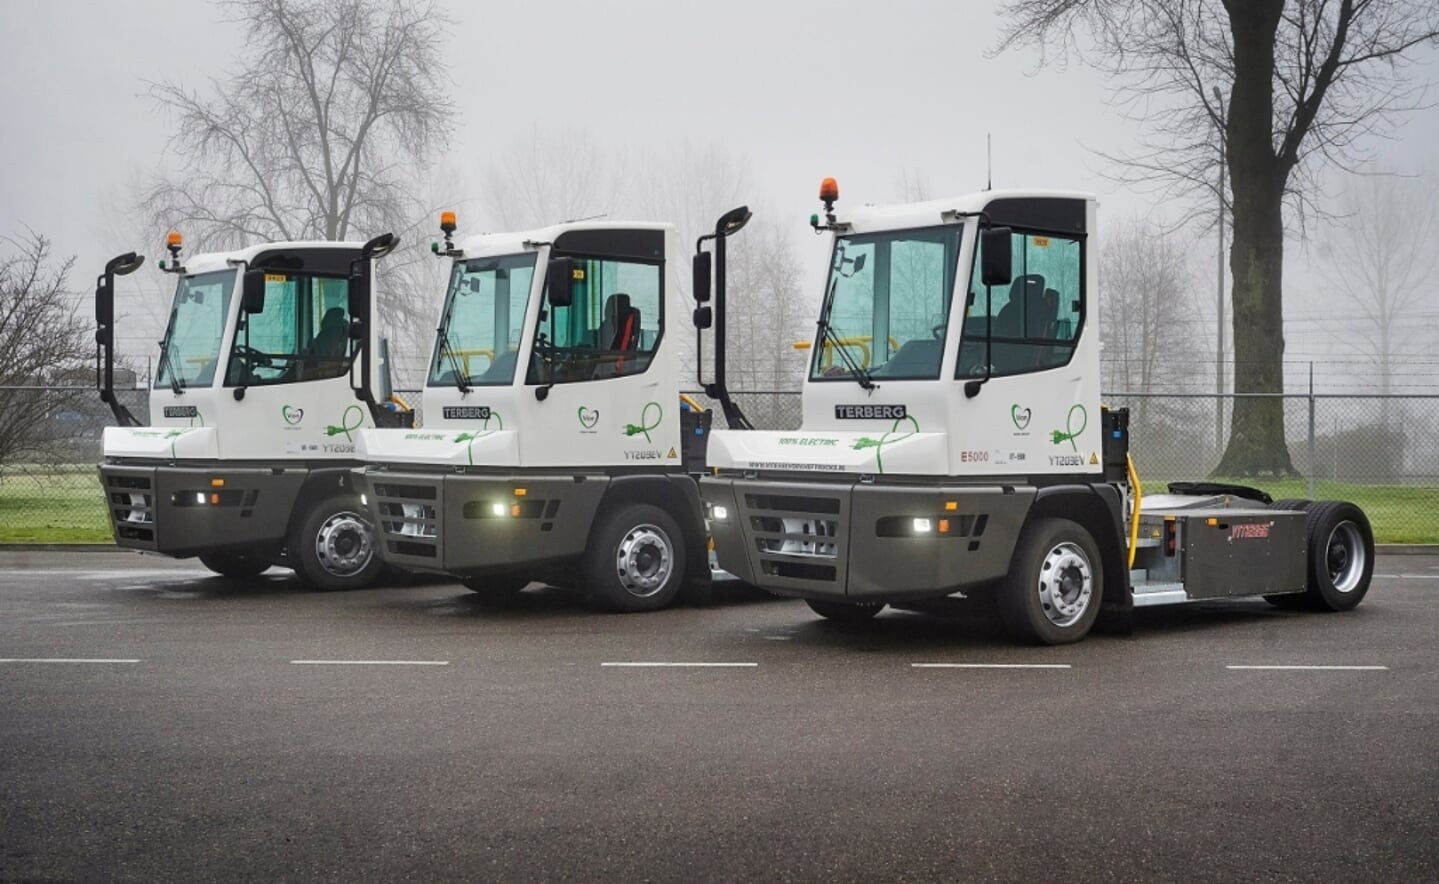 Nieuwe elektrische trucks (E-trucks) bij Vion te Boxtel.
t.b.v. Vion